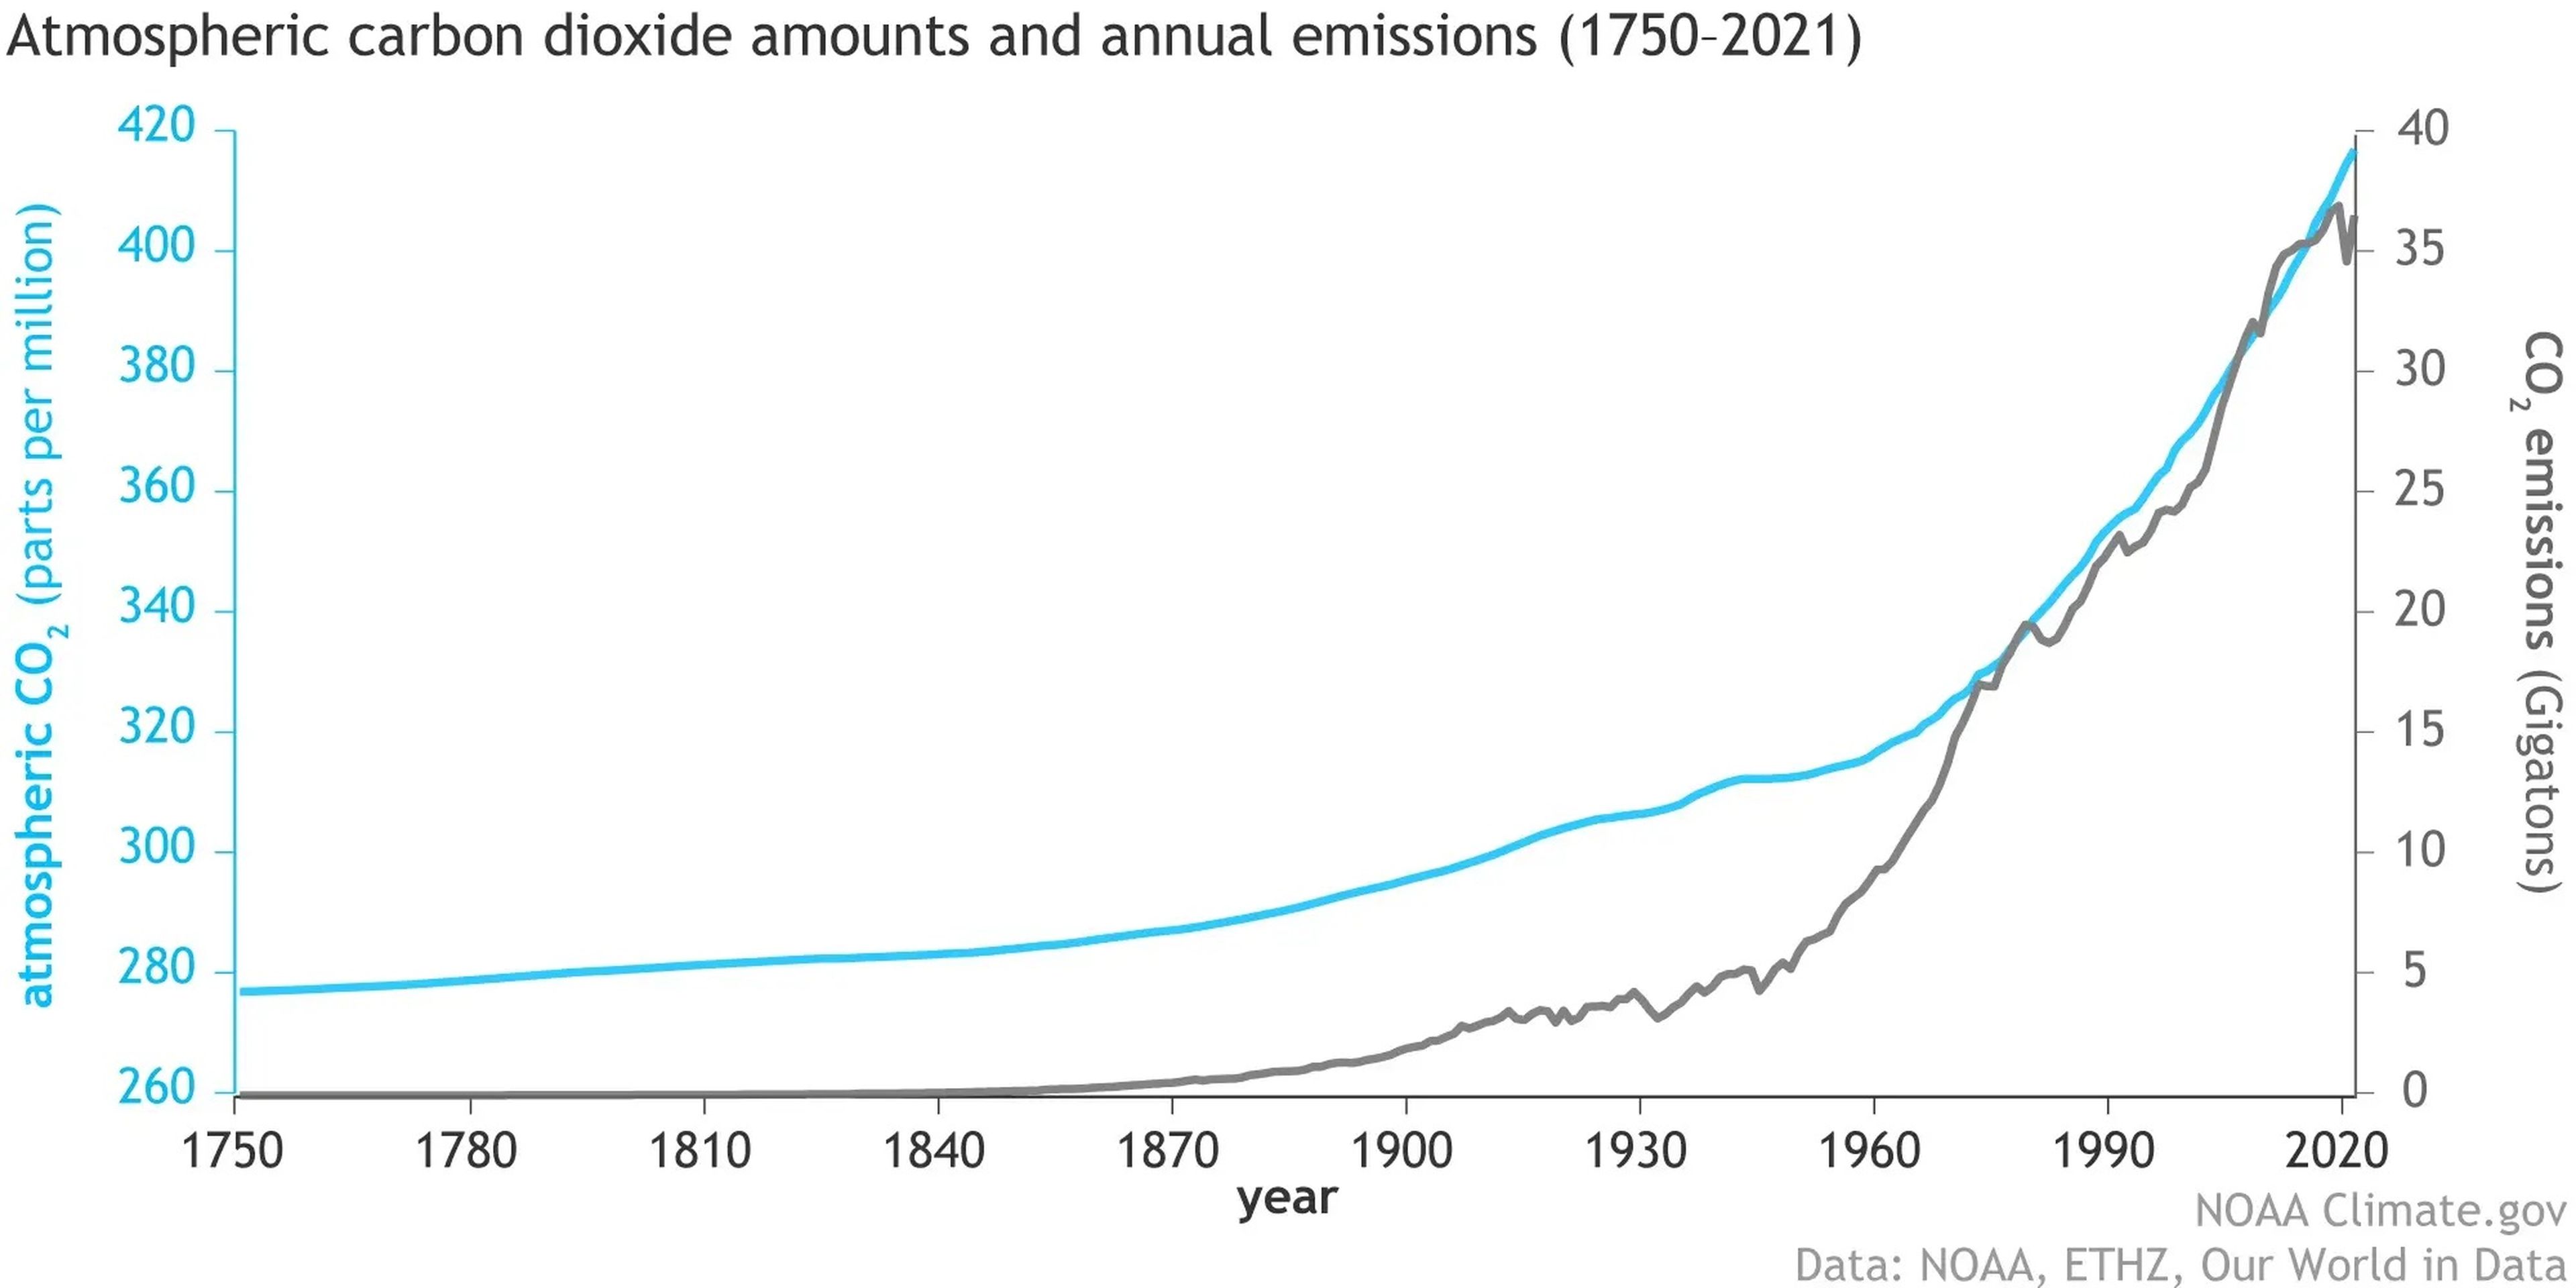 La cantidad de dióxido de carbono en la atmósfera (línea azul) ha aumentado junto con las emisiones humanas (línea gris) desde el inicio de la revolución industrial en 1750.